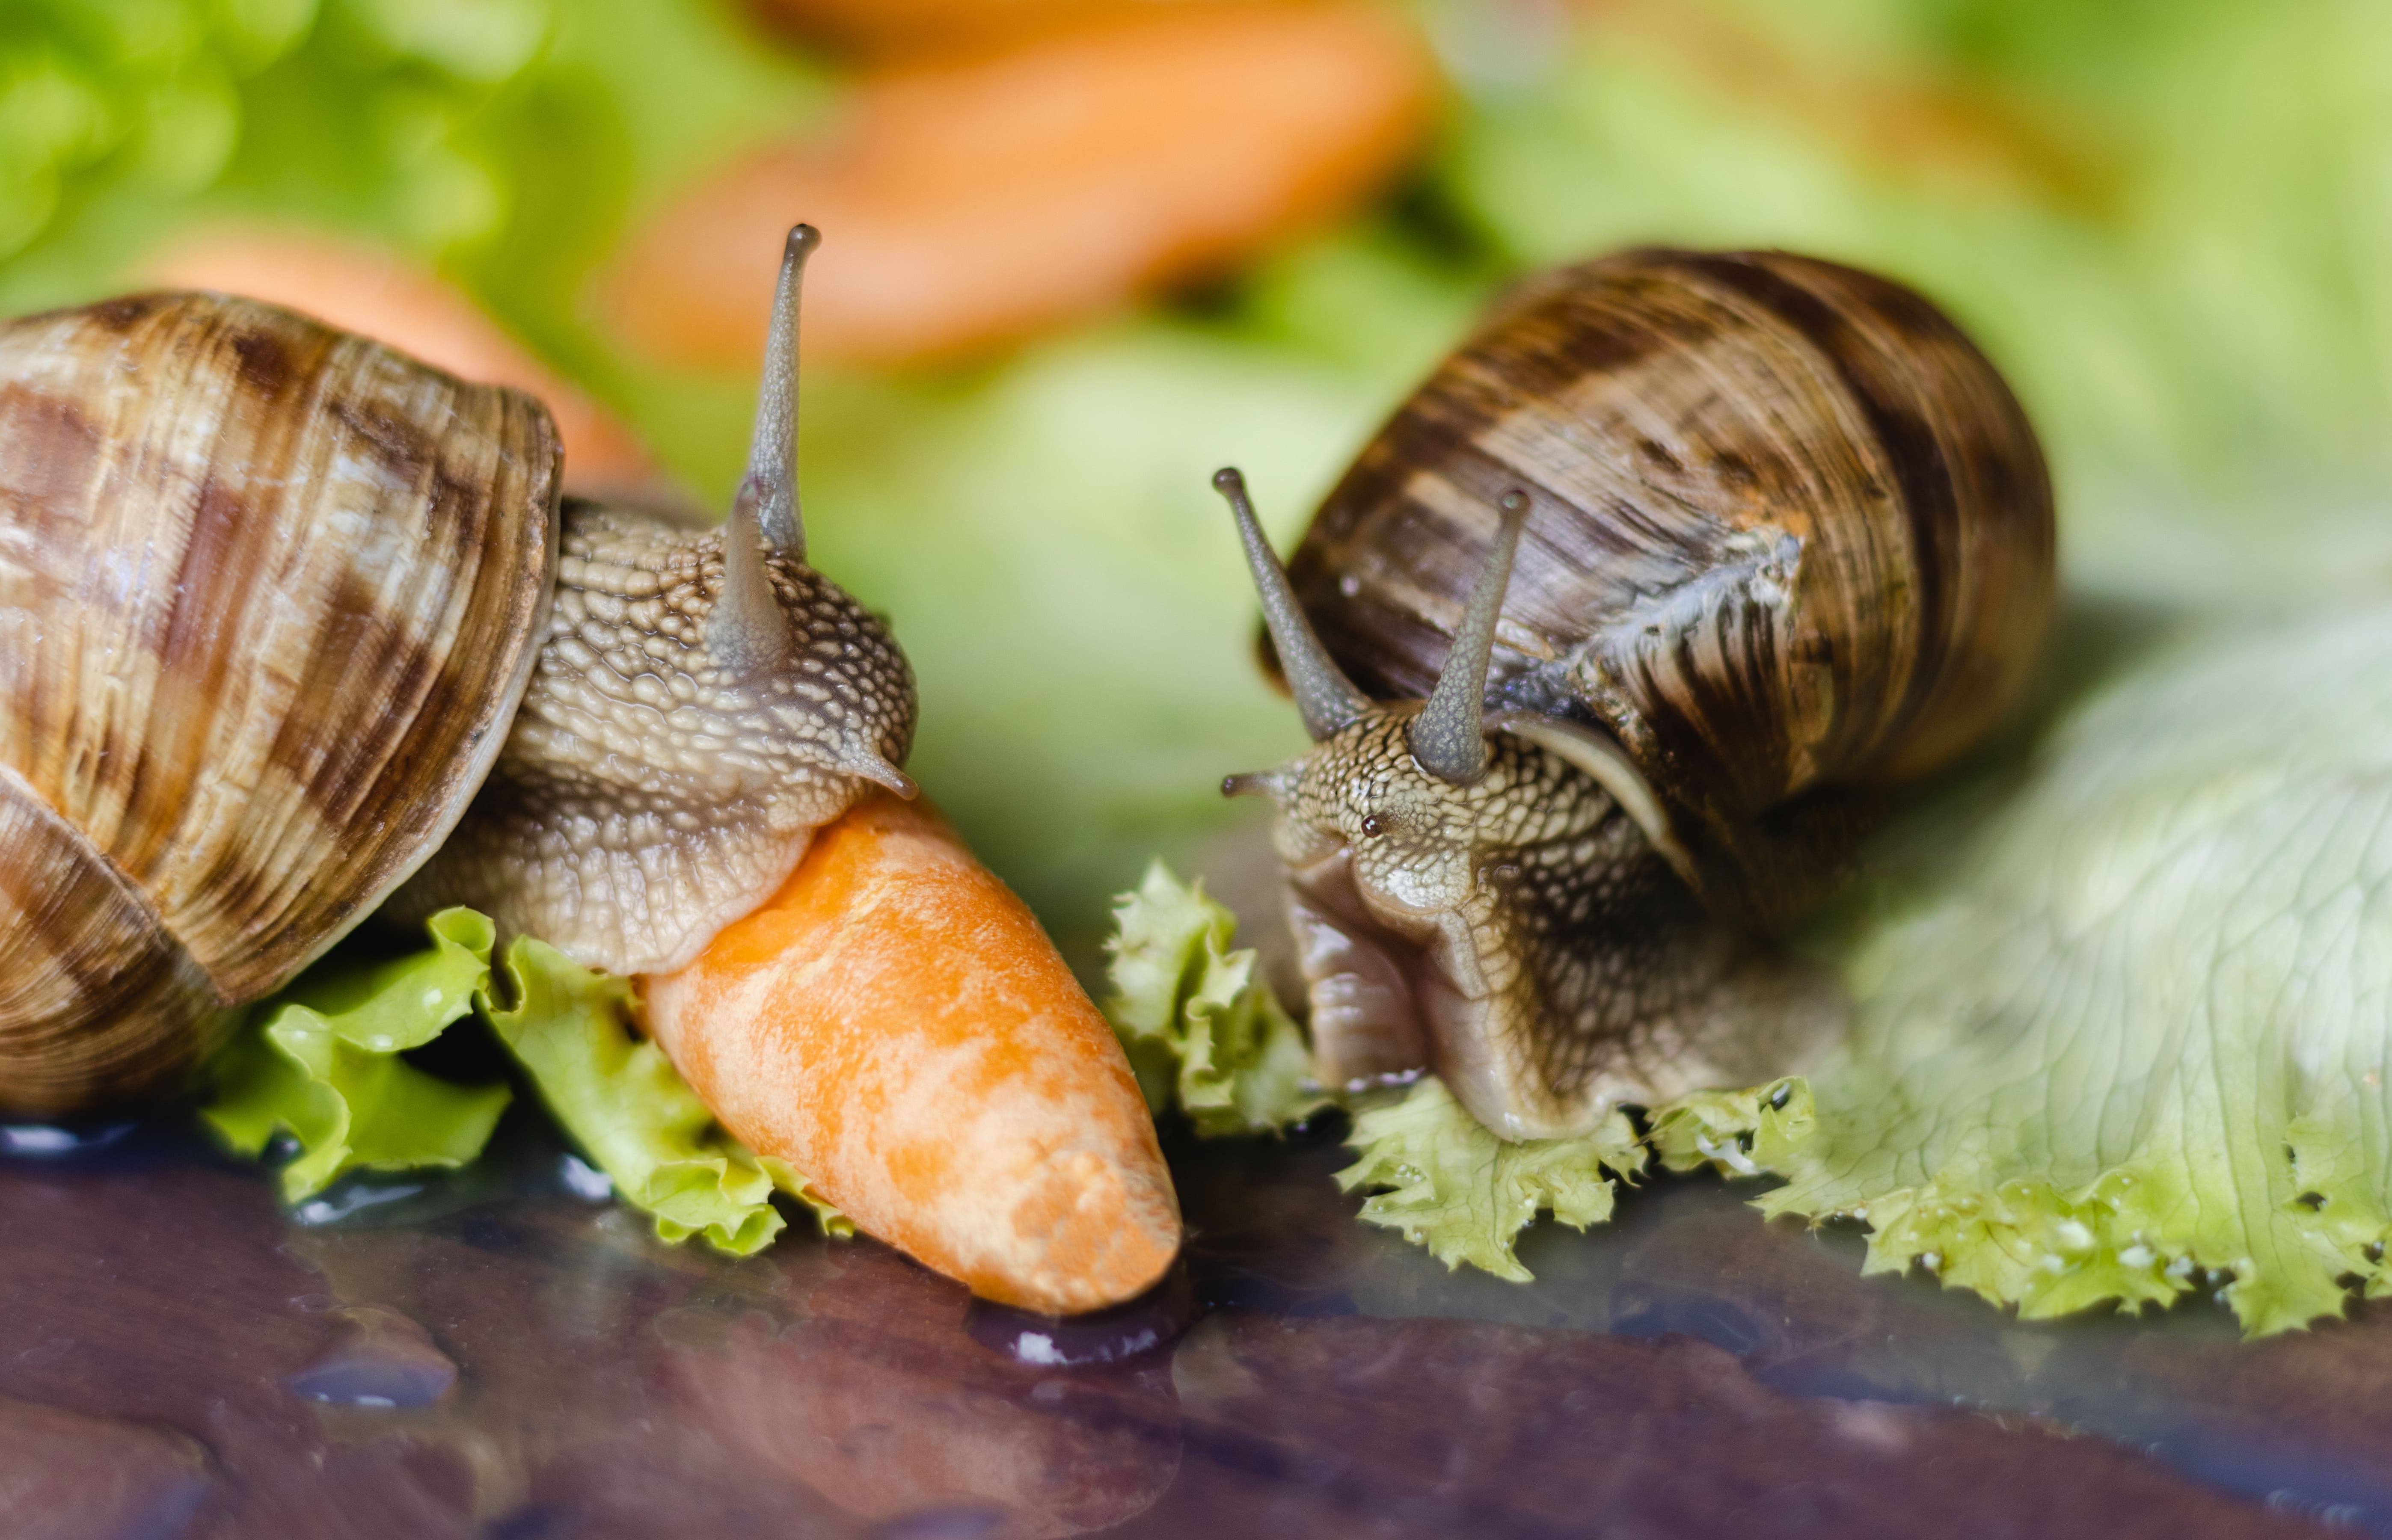 Ces escargots de Bourgogne se régalent de salade et de carotte, mais il existe des plantes qu'ils apprécient encore plus. Elles sont utiles pour les détourner de nos chers légumes. © Barillo_Picture, Adobe Stock